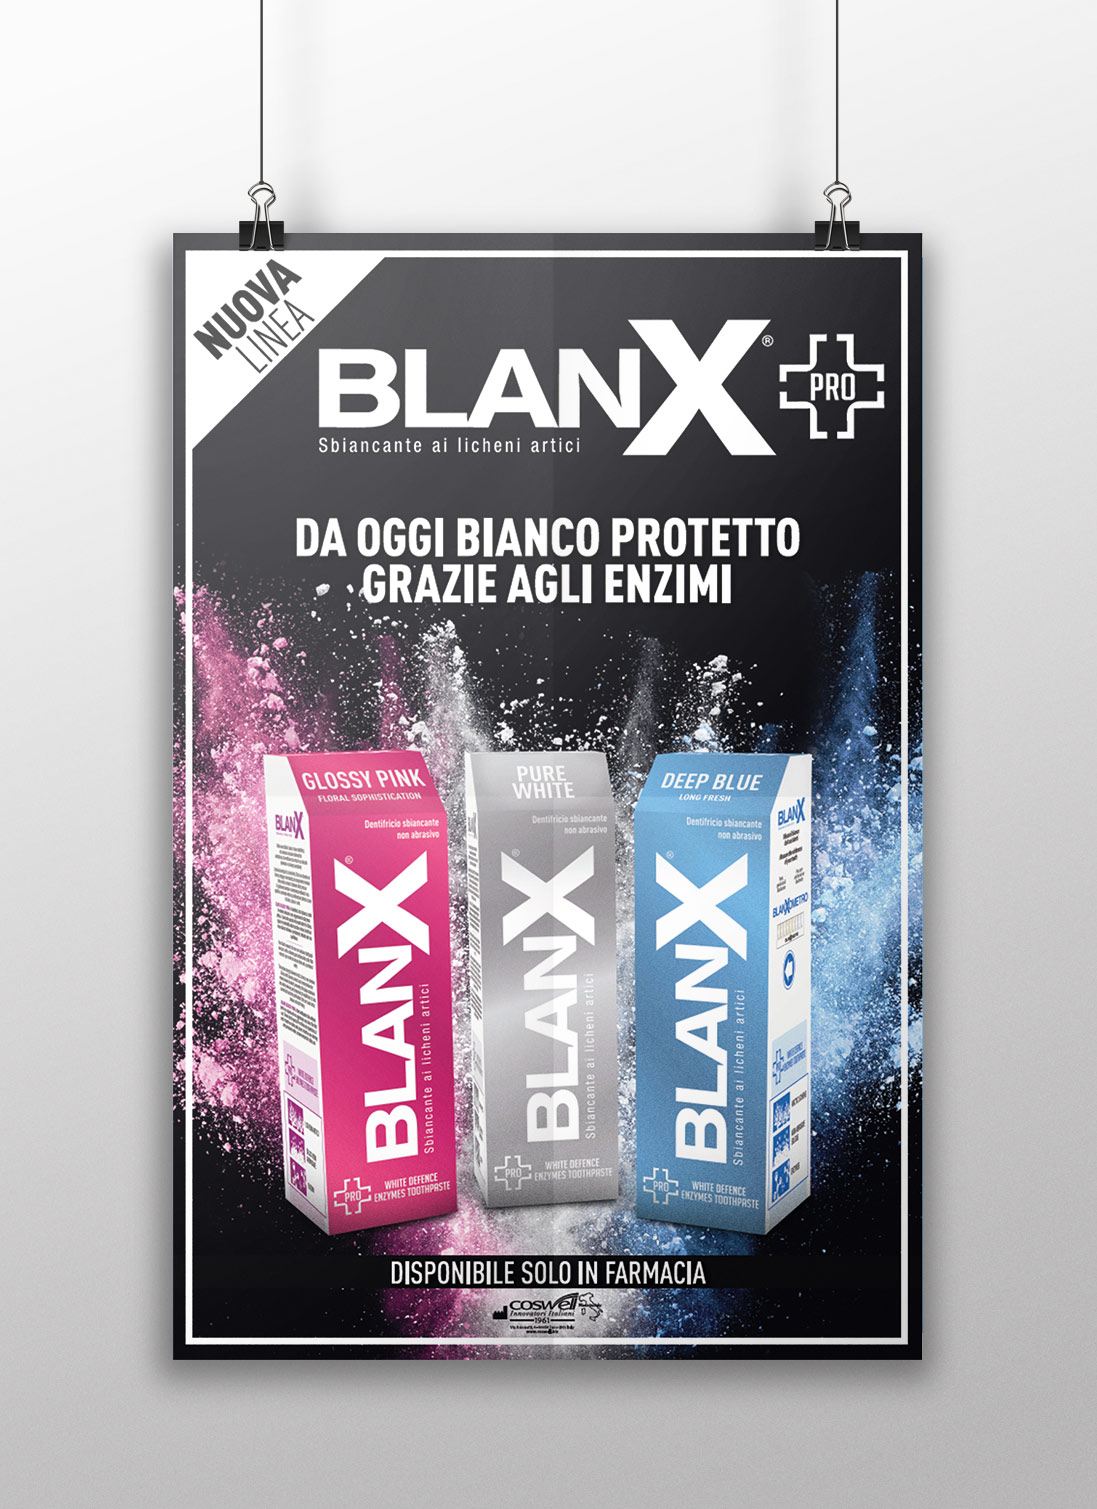   Dalla ricerca BlanX, nasce BLANX PRO su Easyfarma